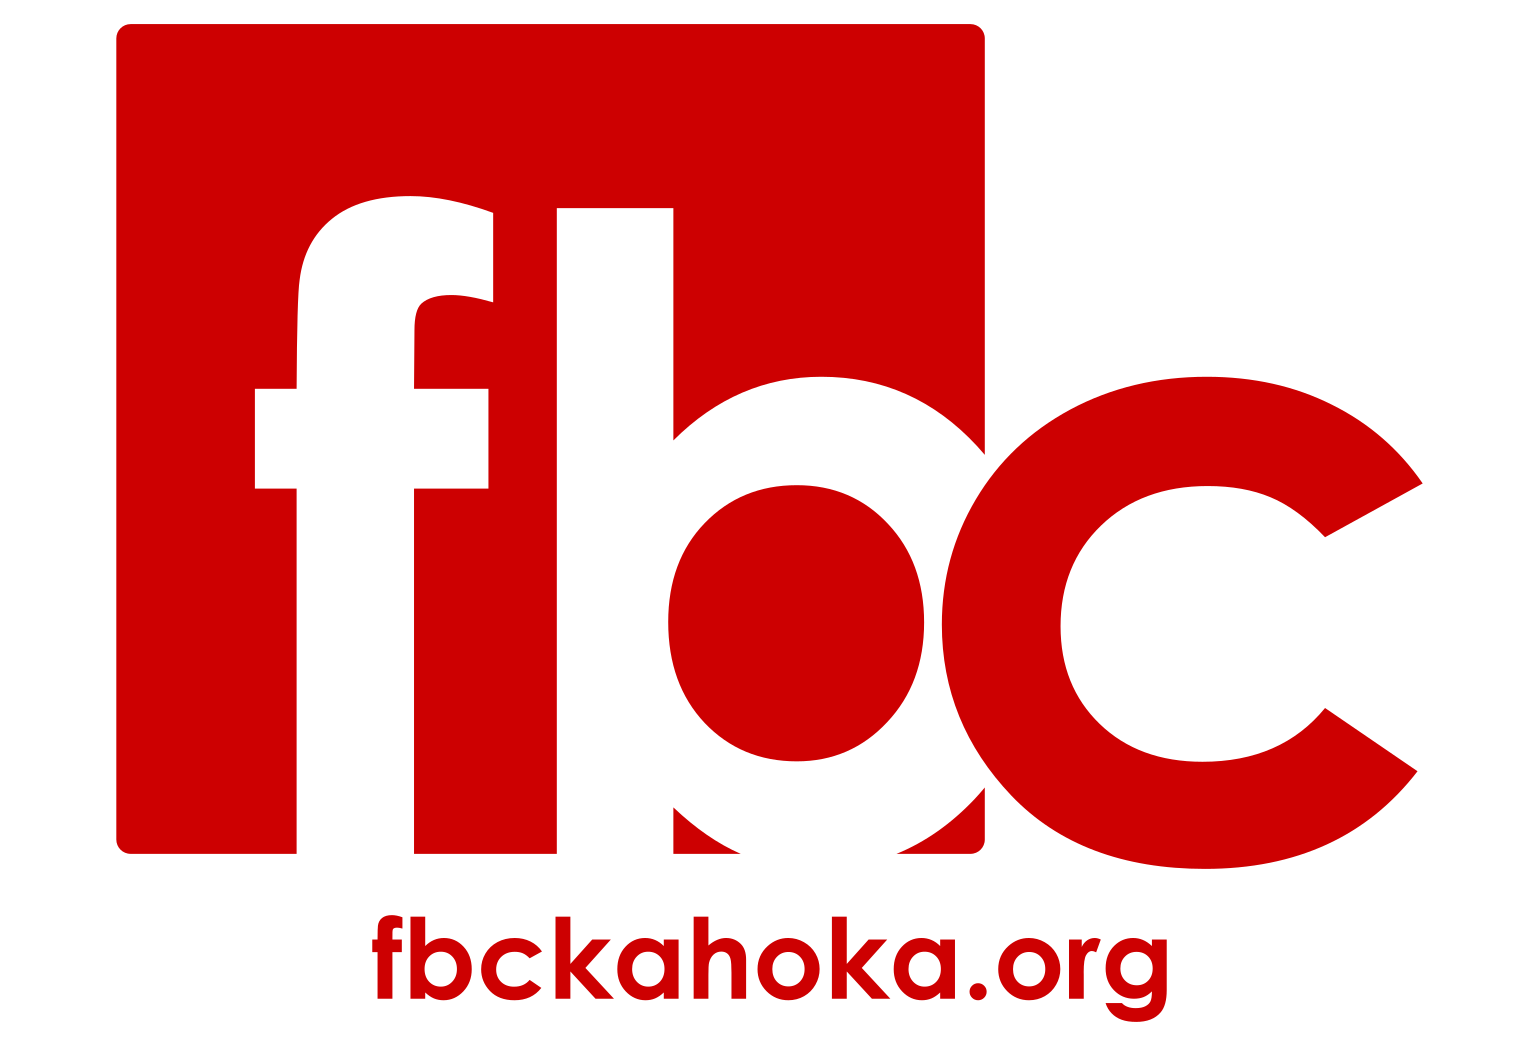 First Baptist Church of Kahoka - 